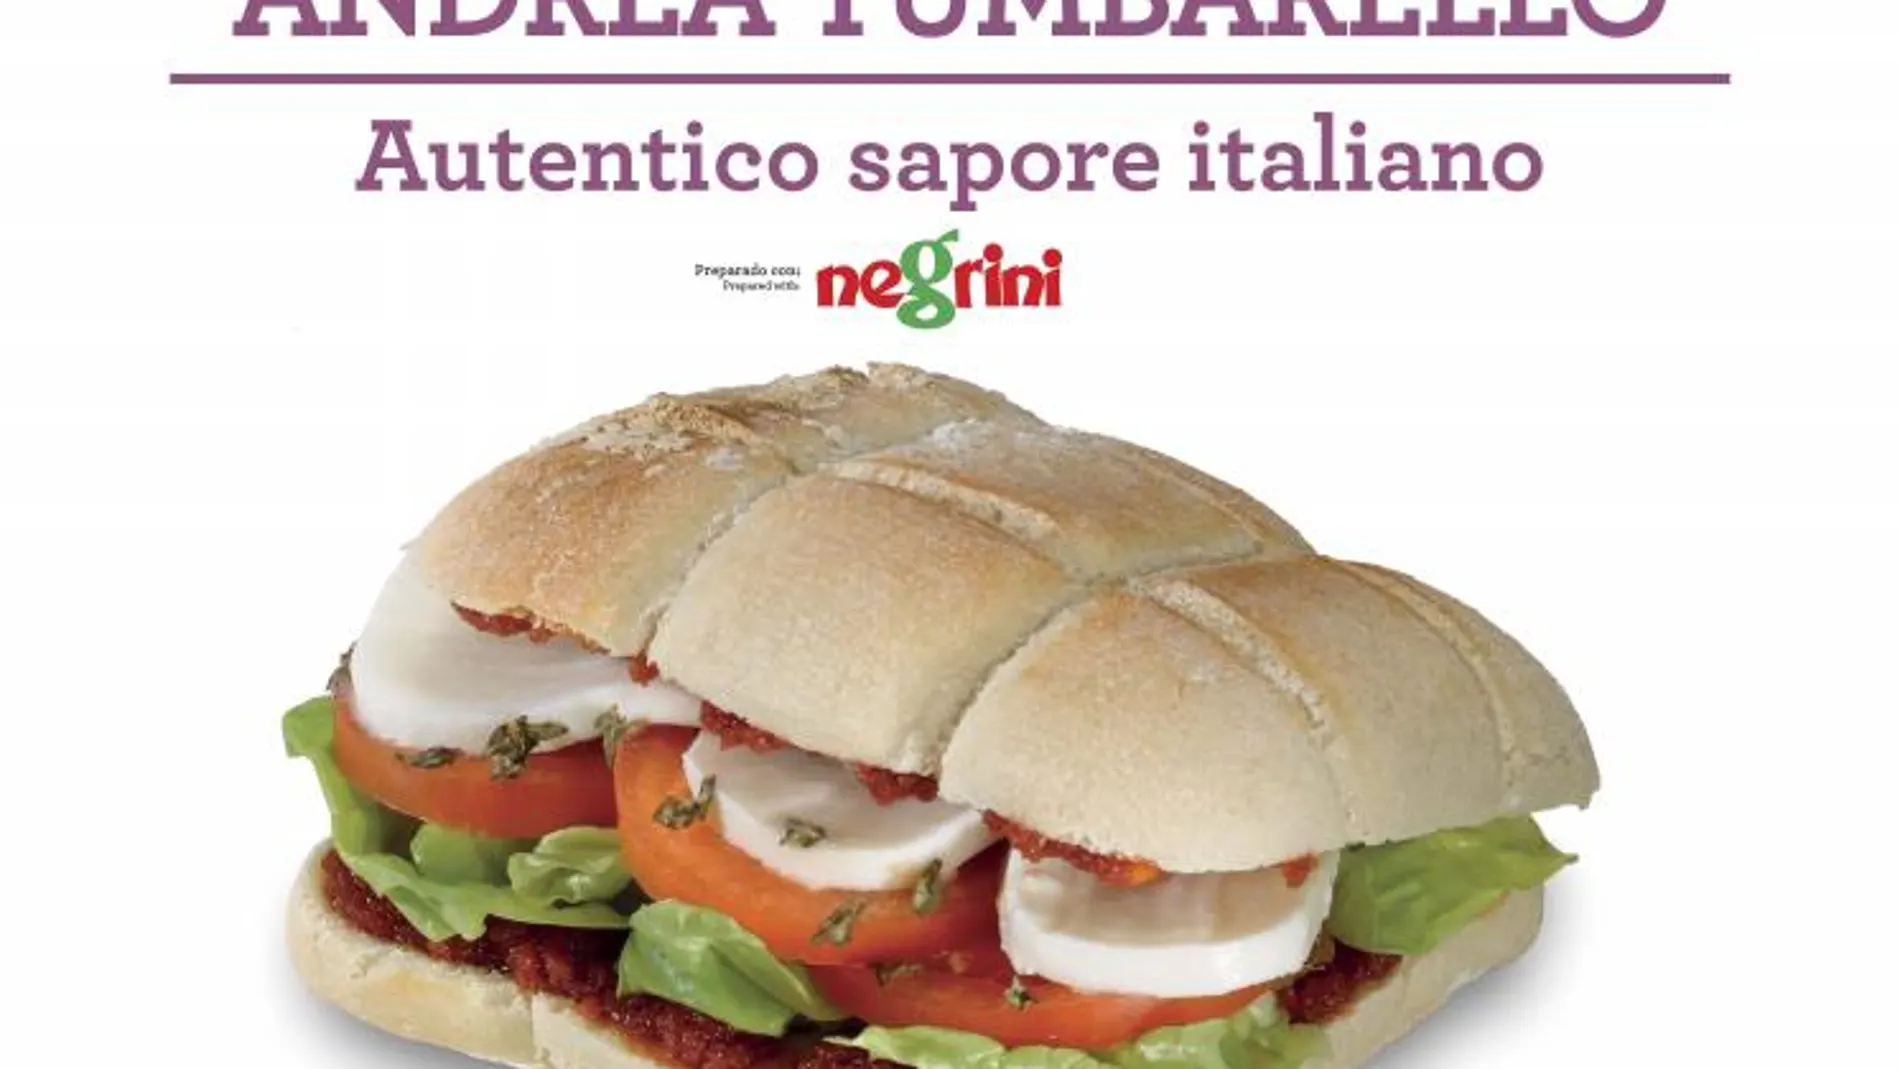 Tumbarello crea un panino con "sapore"italiano para Autogrill